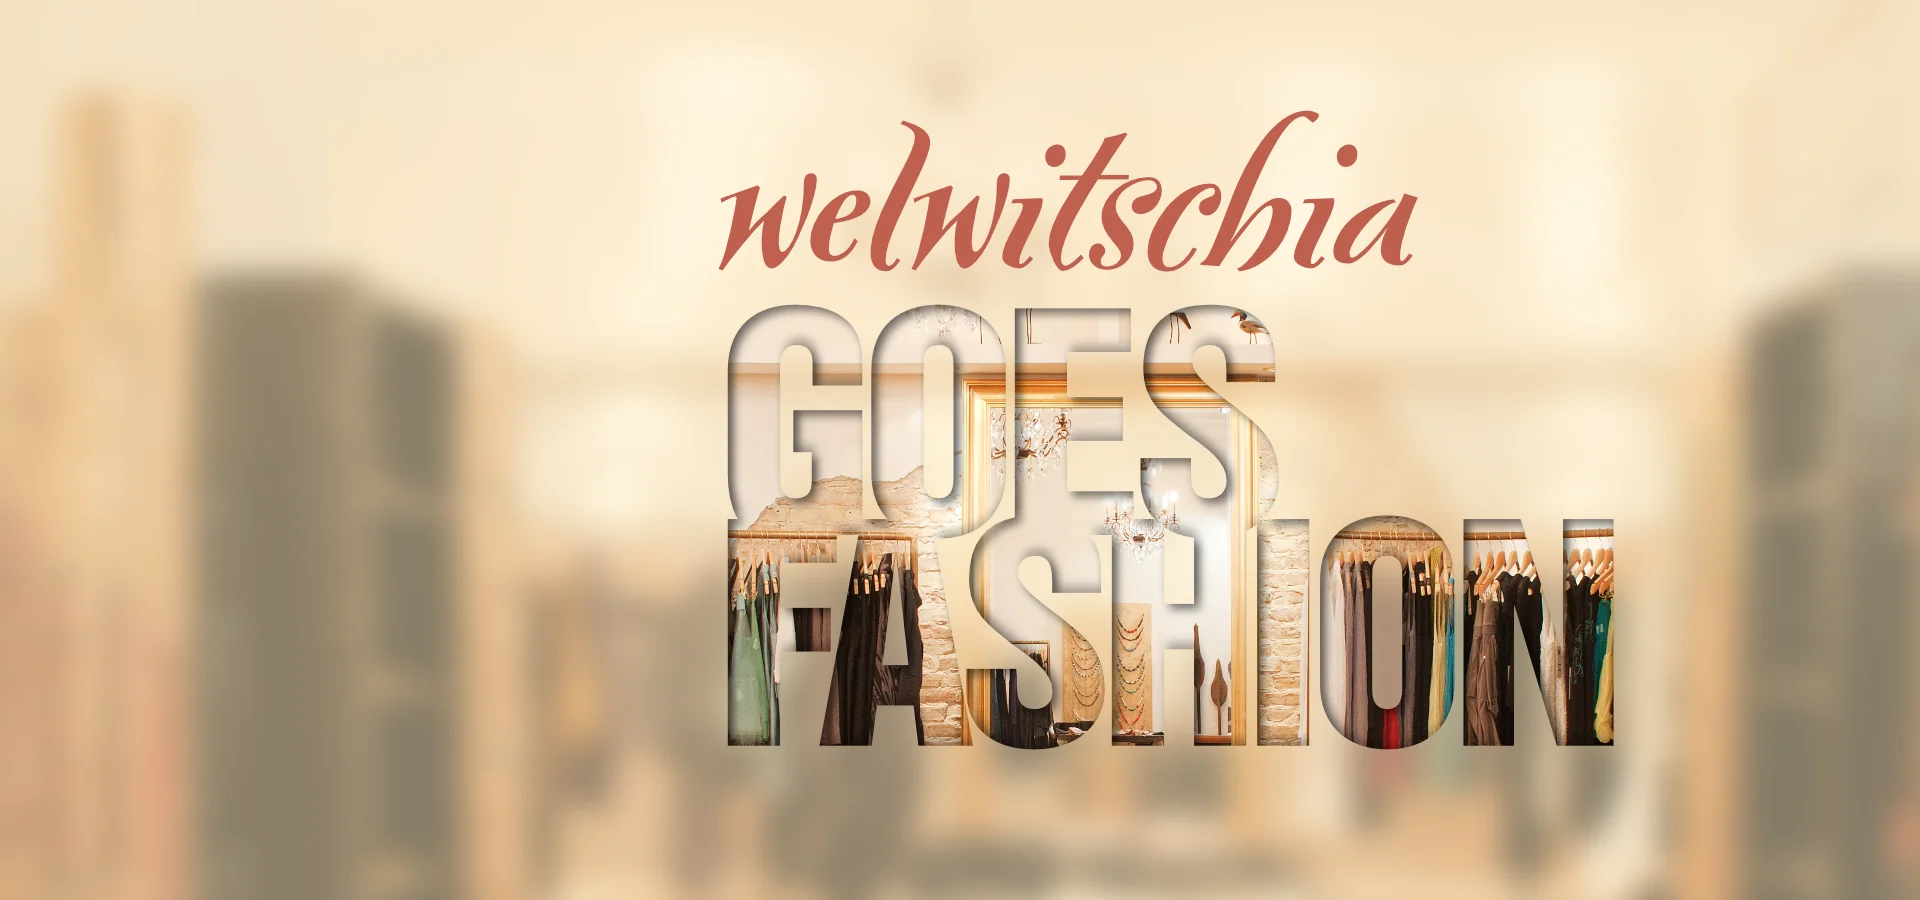 Welwitschia Berlin – Website